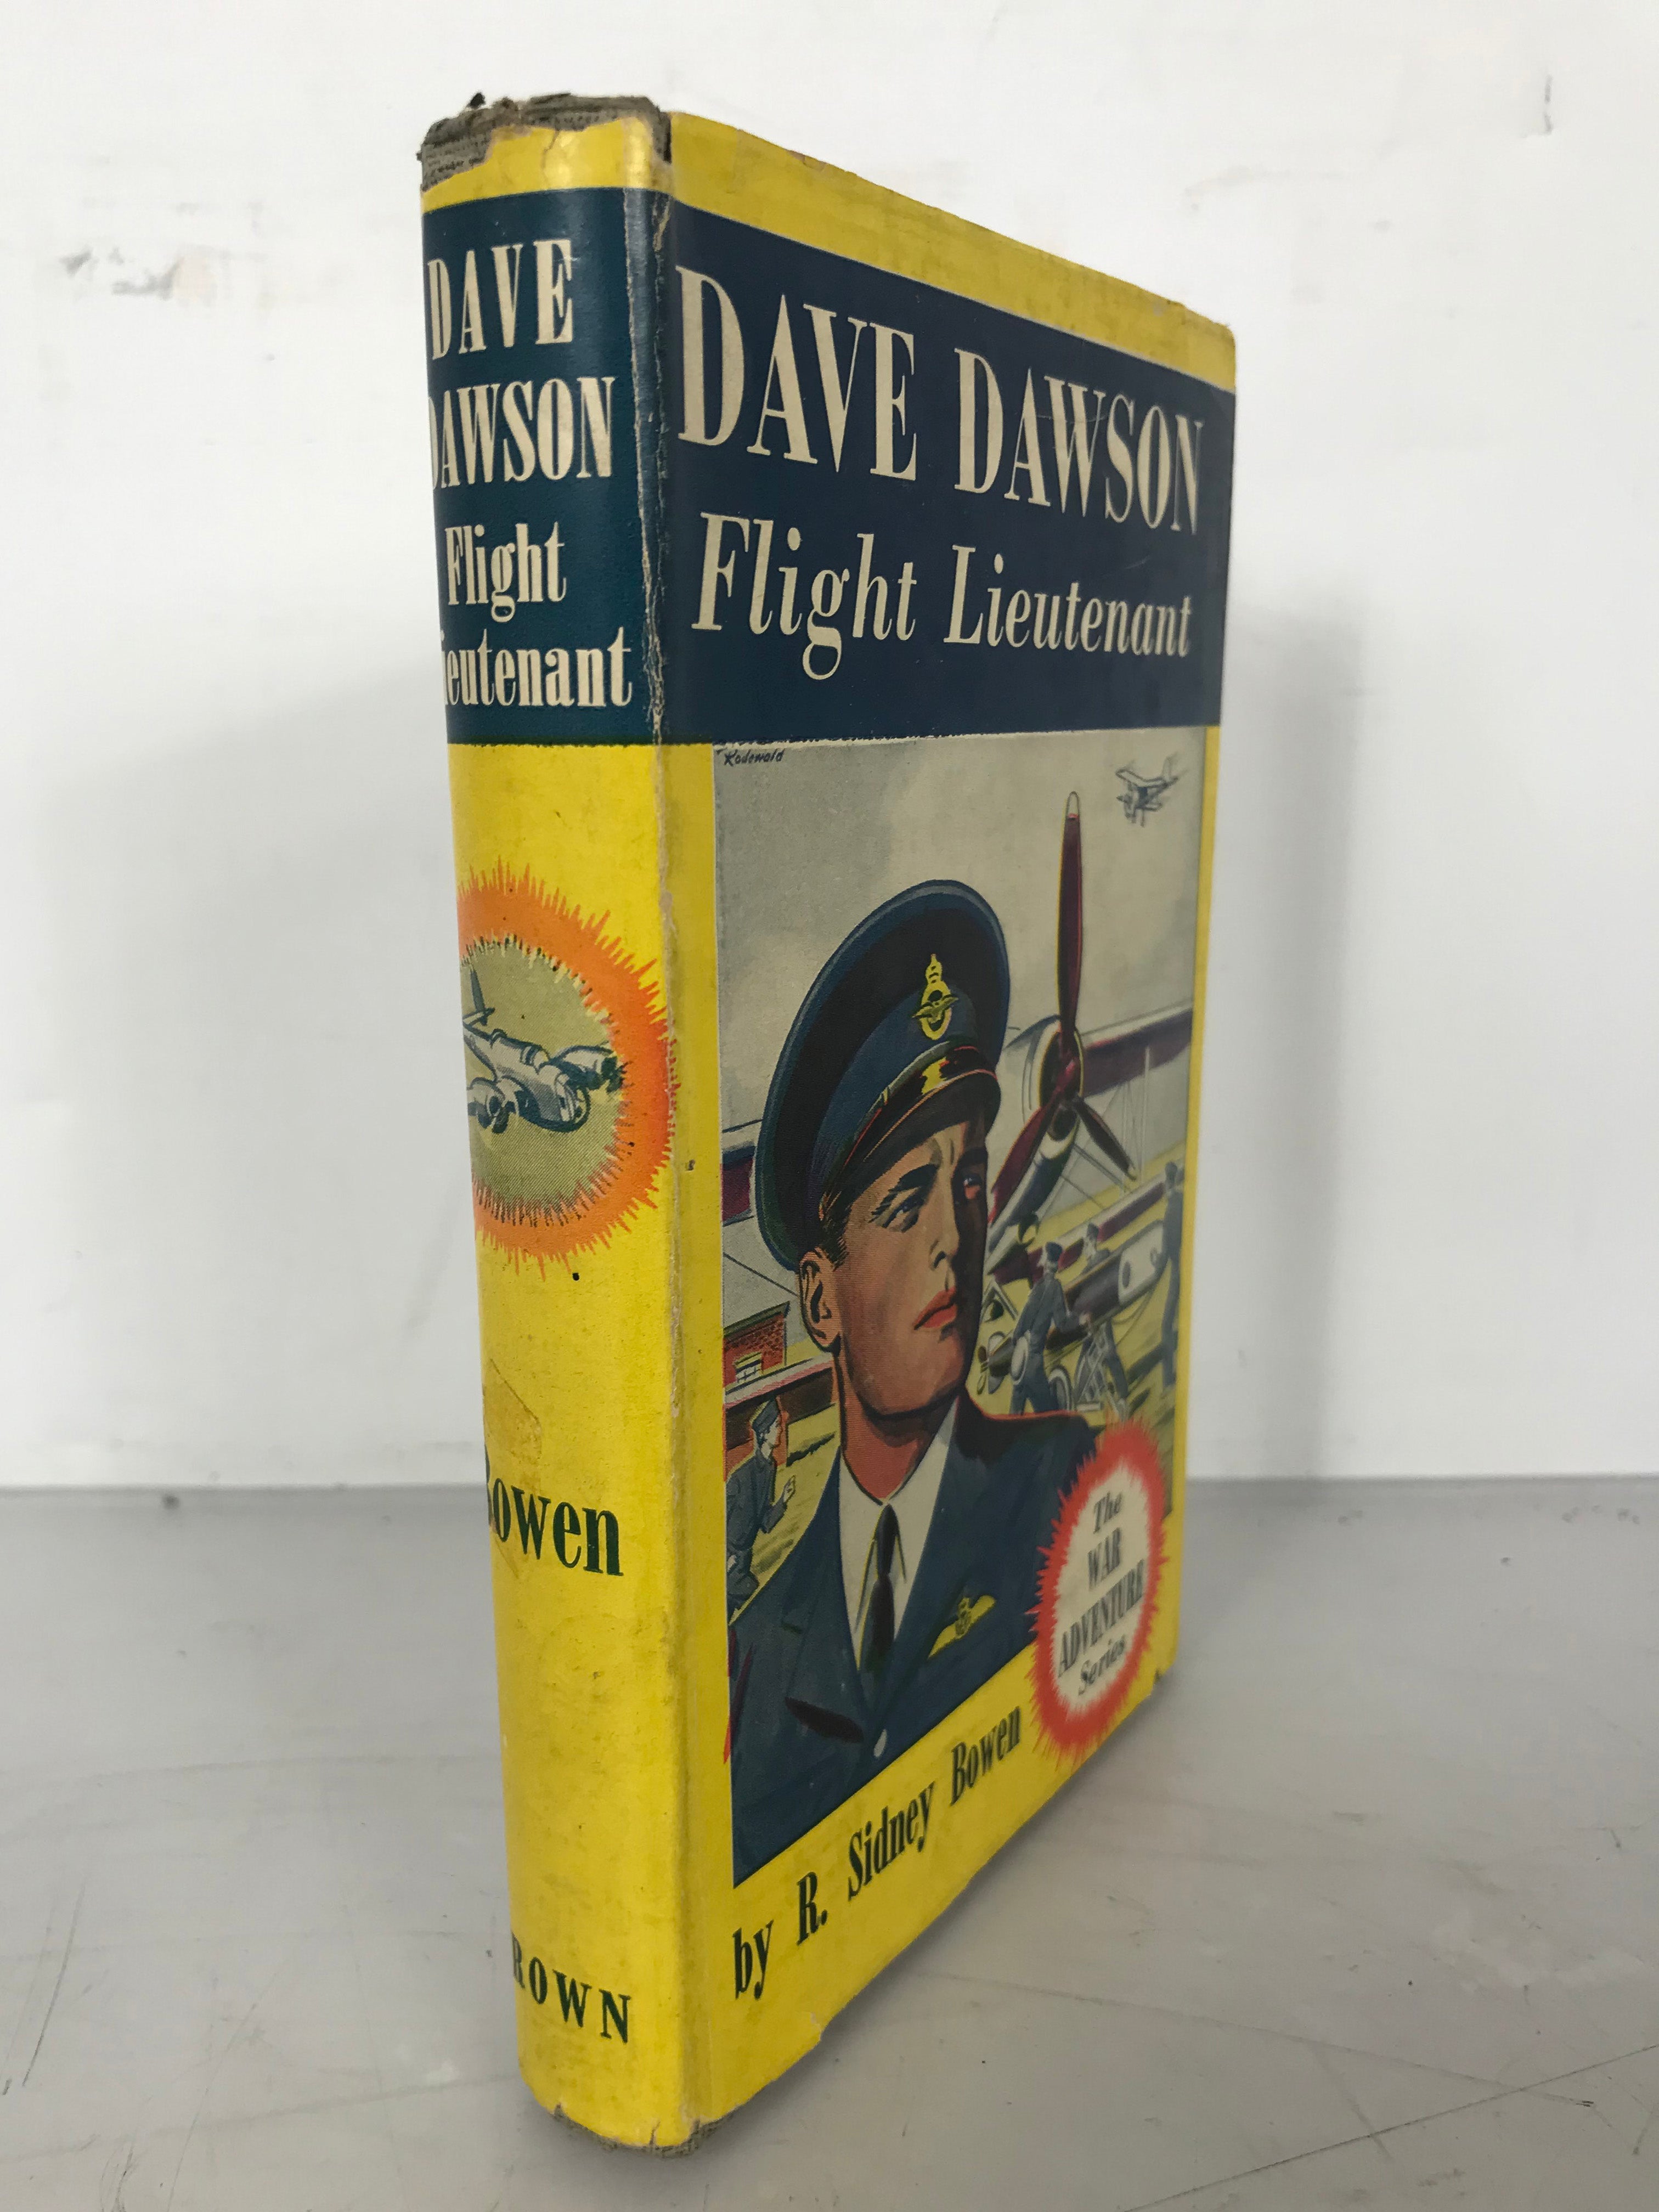 Dave Dawson Flight Lieutenant by R. Sidney Bowen 1941 HC DJ